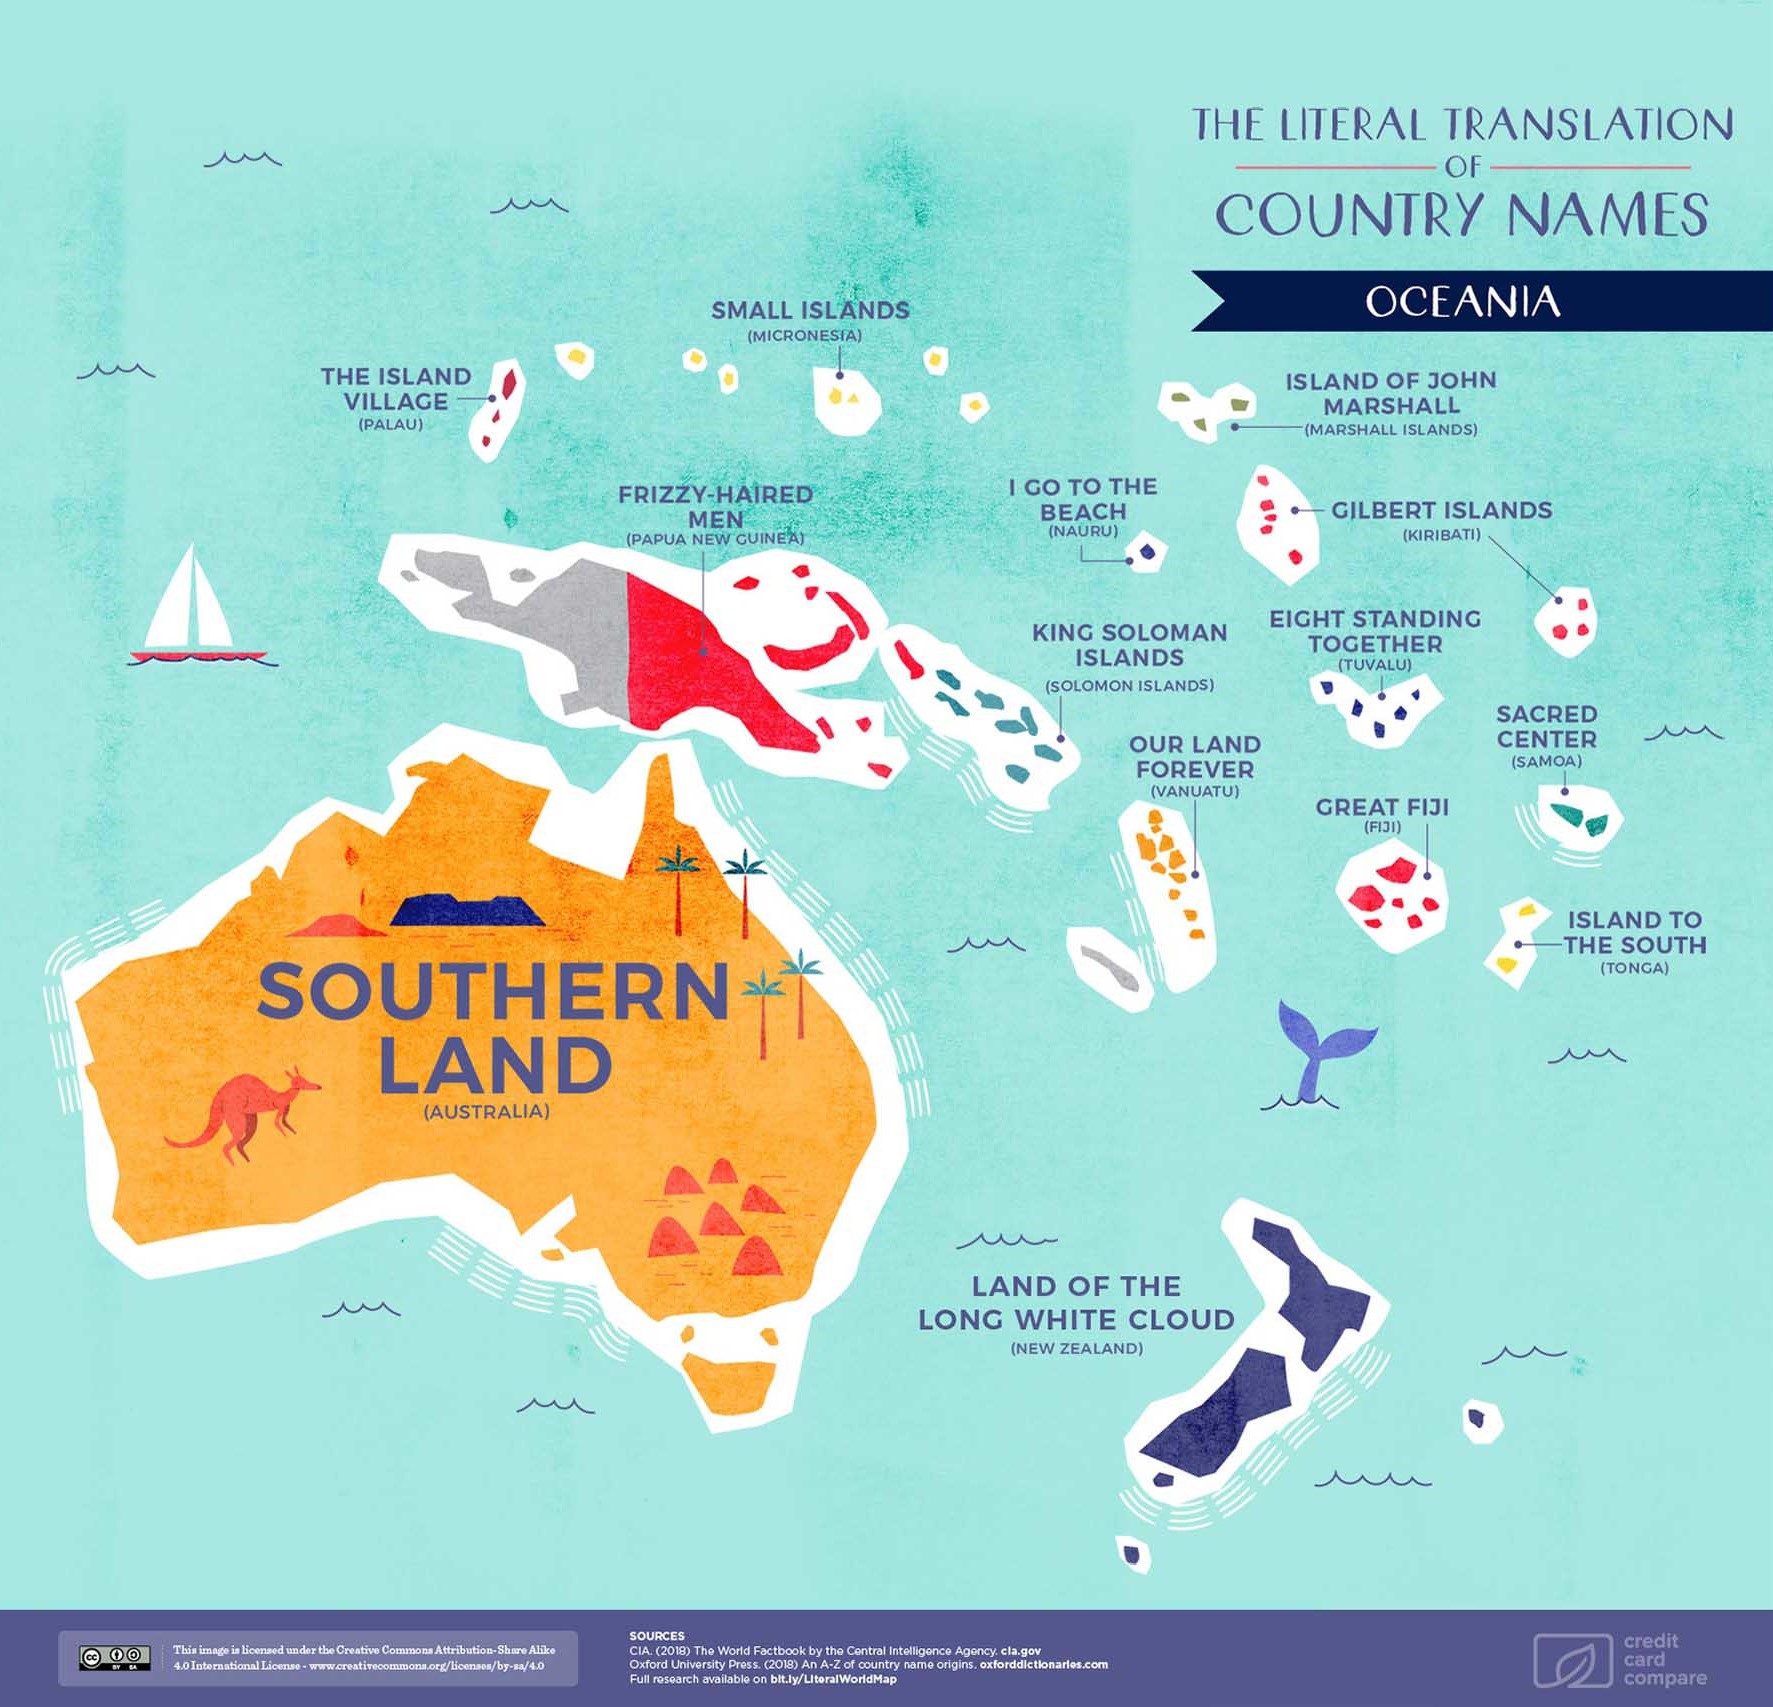 Oceania map names